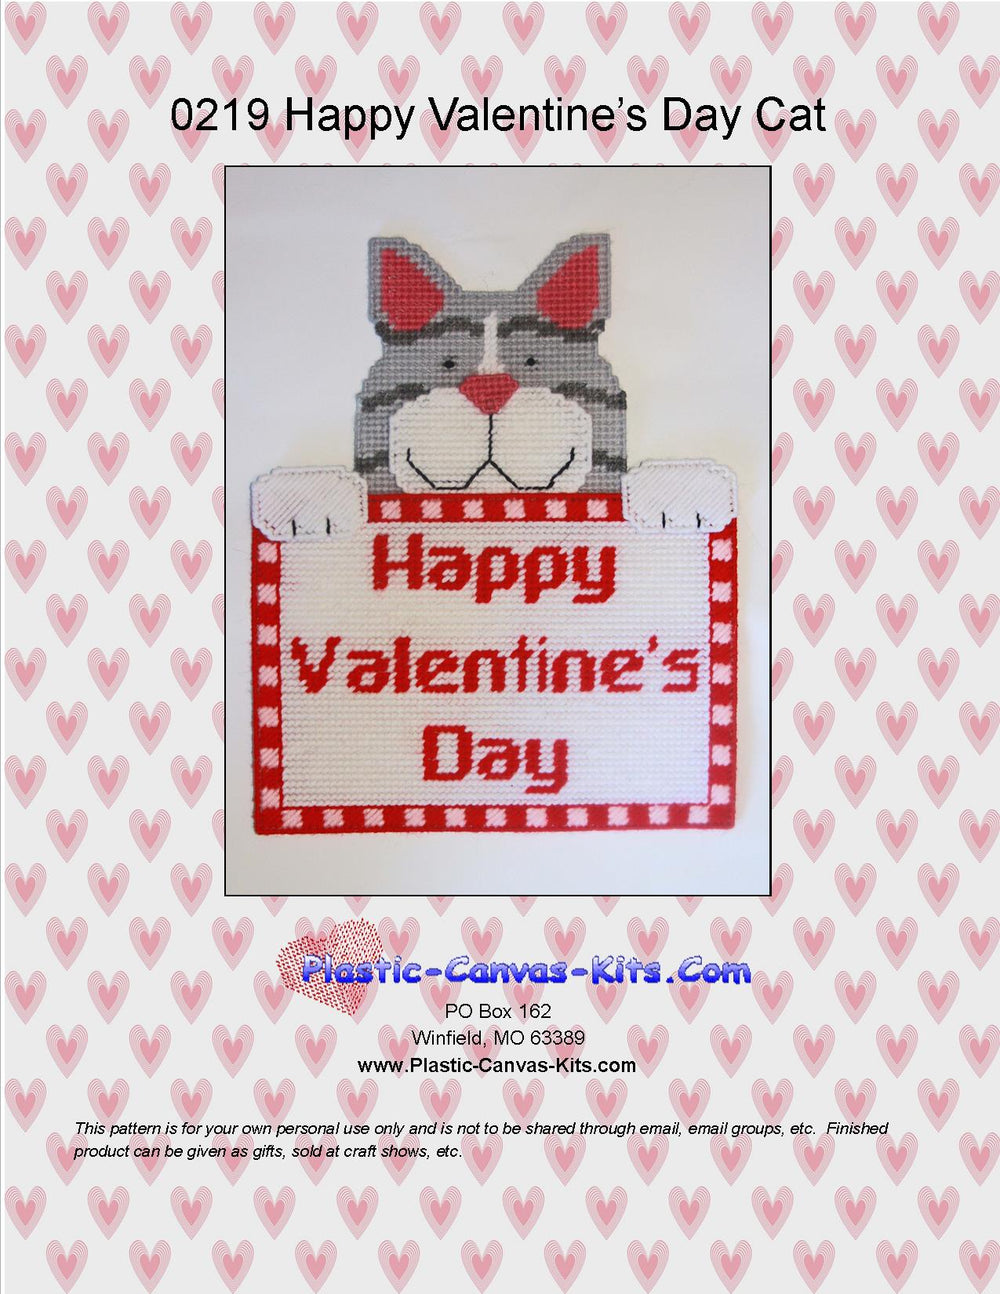 Happy Valentine's Day Cat